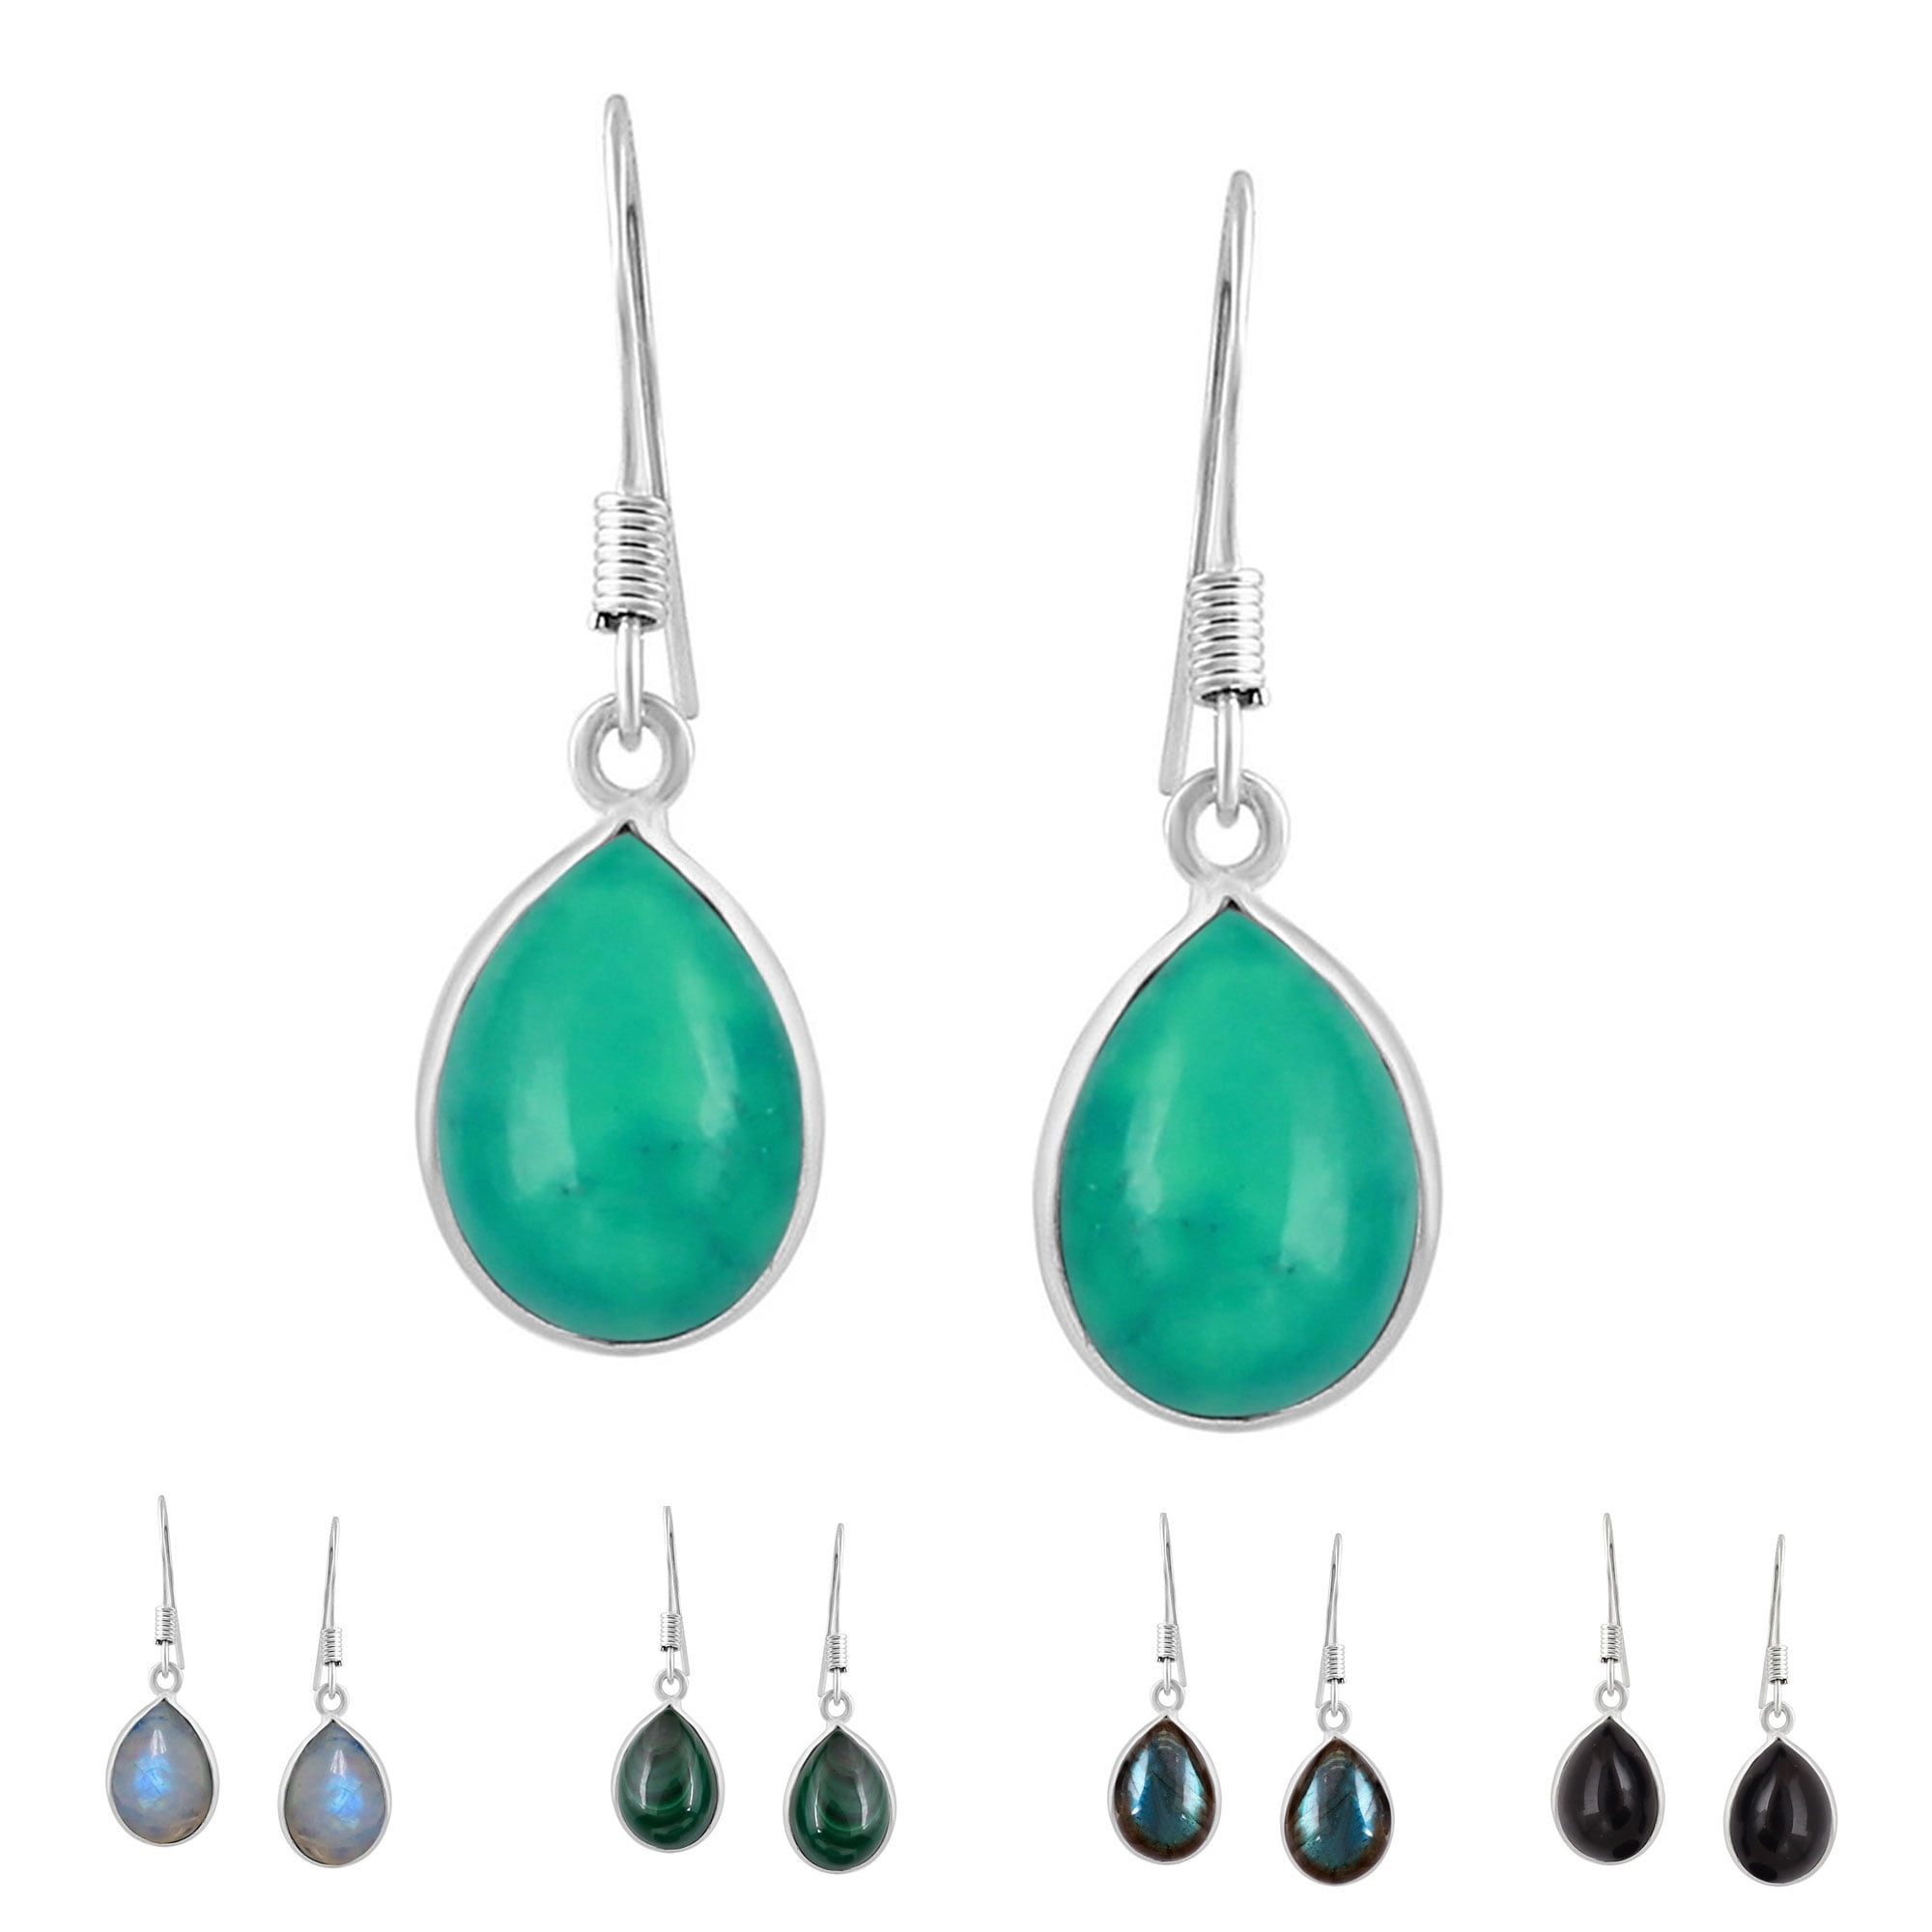 Blue/Teal/Green Tear Drop/Pear Shaped Wooden Dangle Earrings